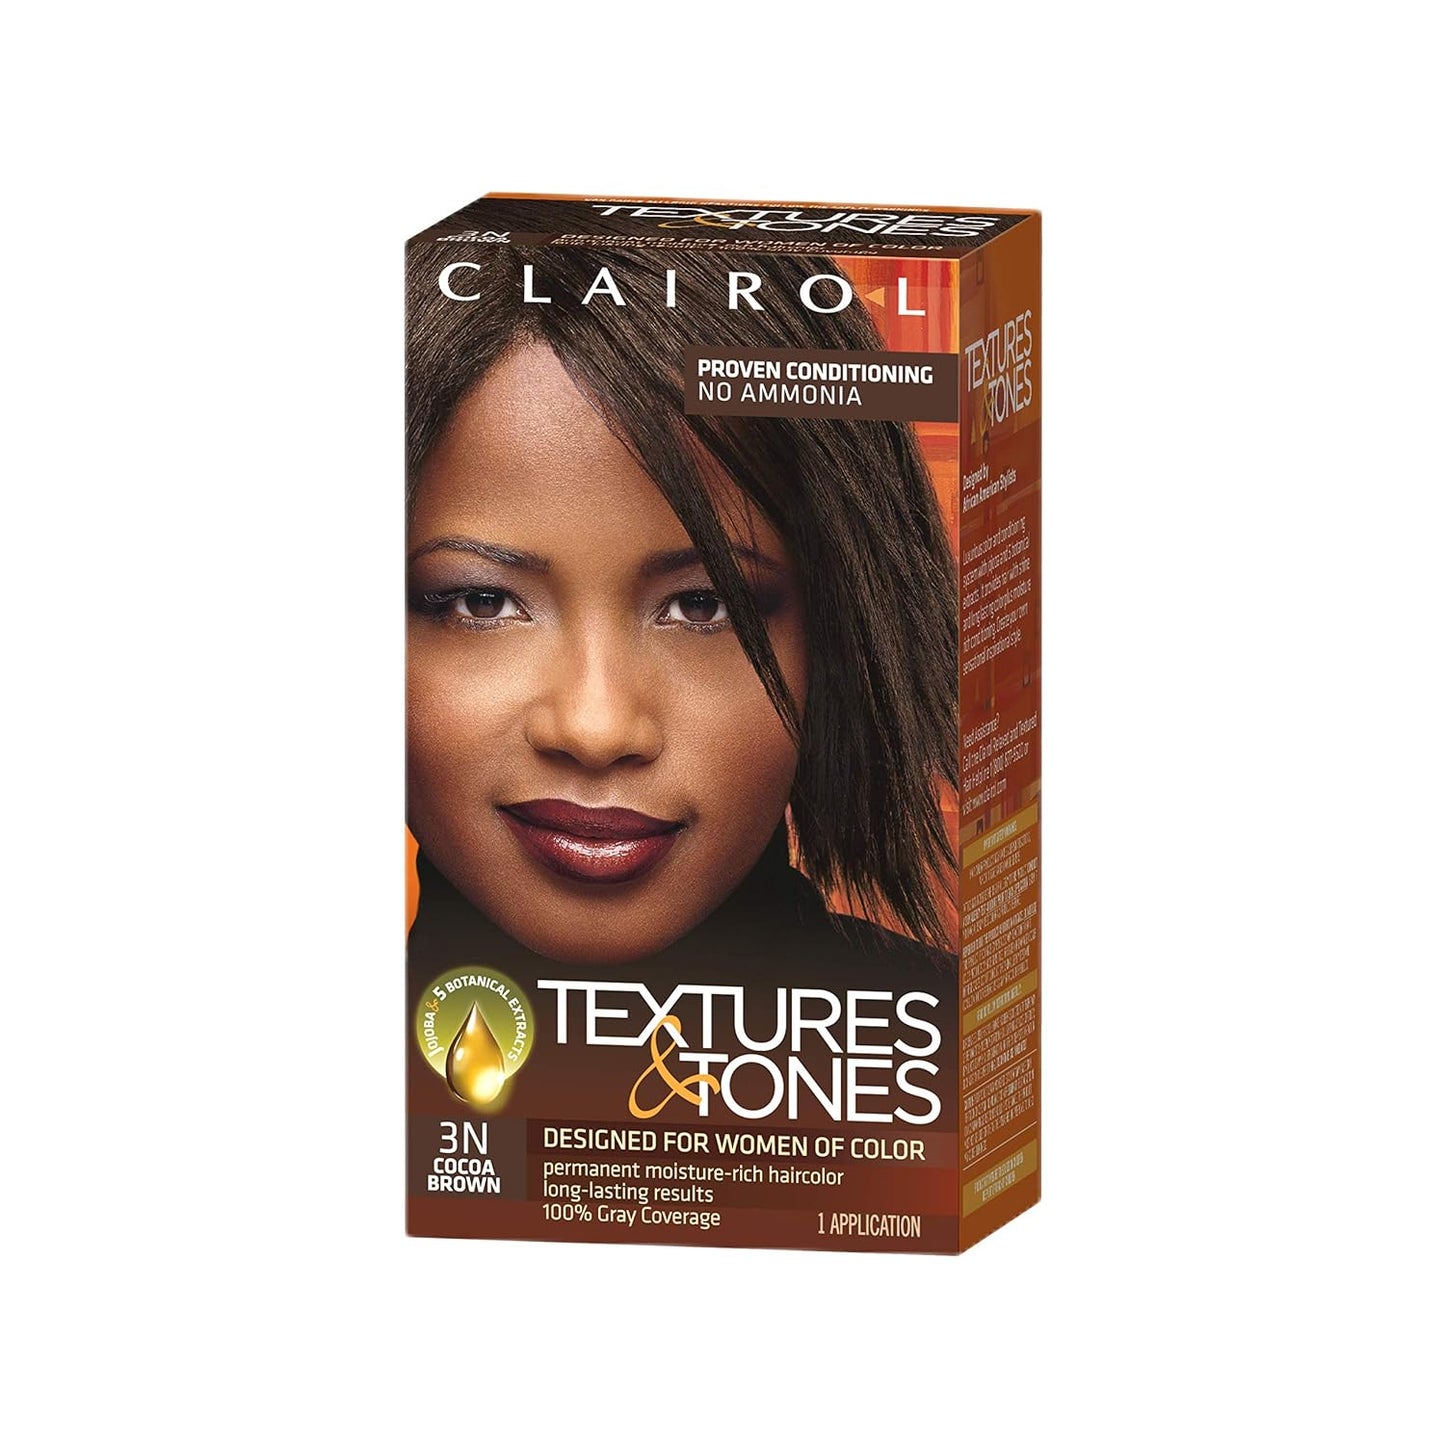 Texture & Tones Permanent Haircolor Kit